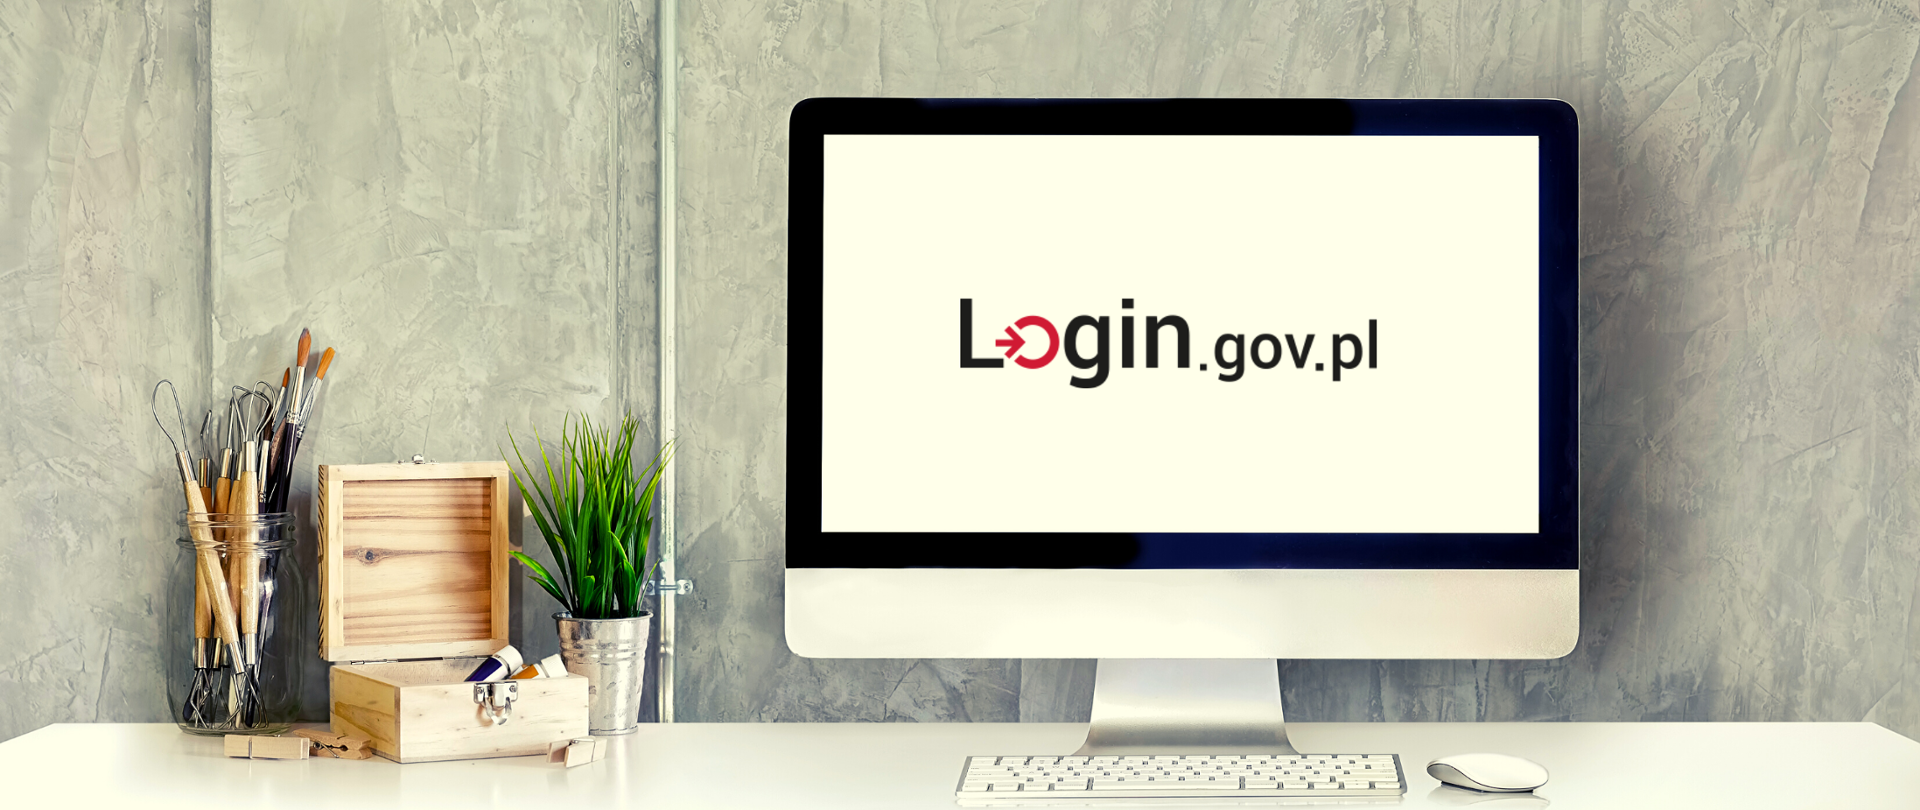 Monitor z logiem Login.gov.pl na ekranie